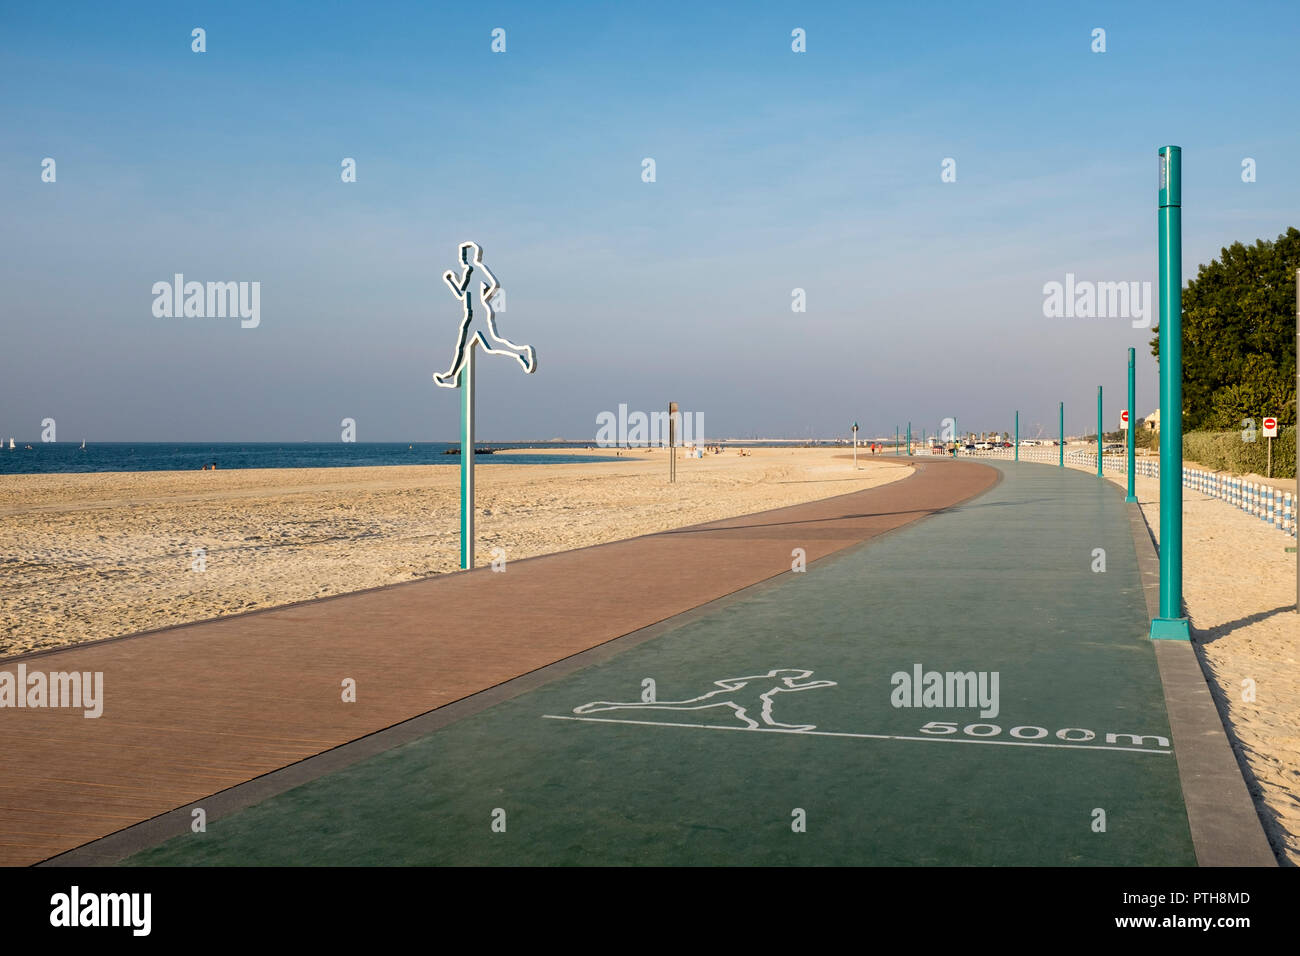 L'exécution et de jogging sur la plage dans le quartier de Jumeirah Dubai Banque D'Images